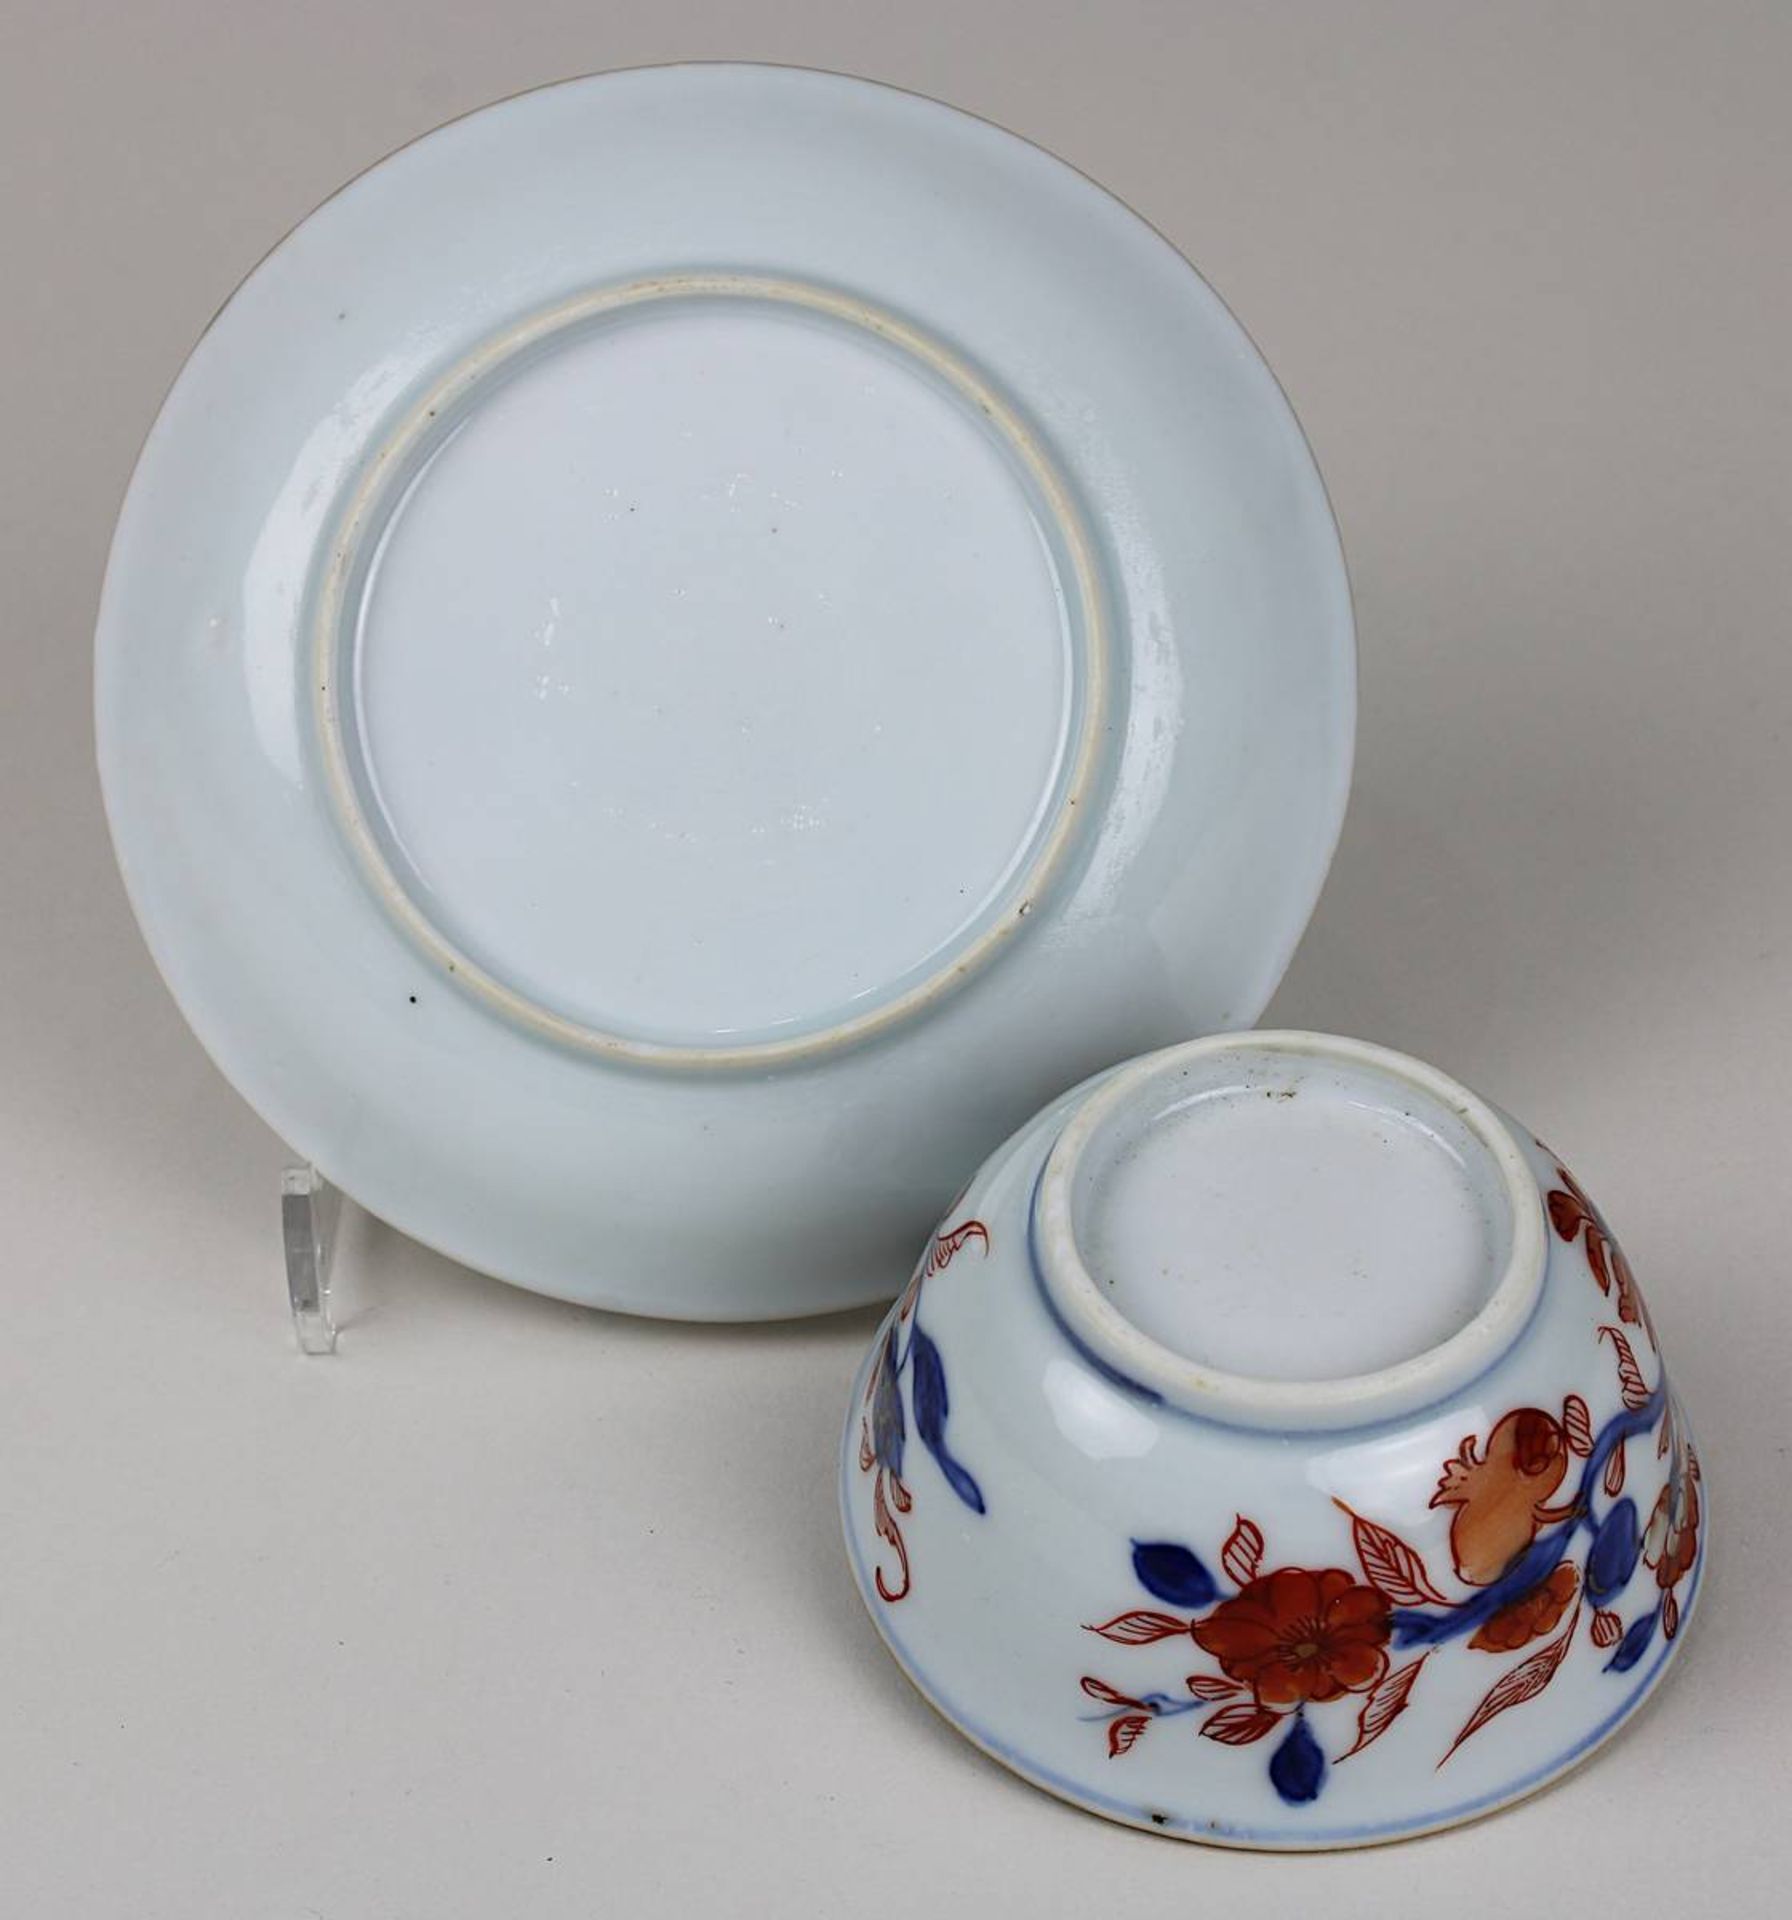 Porzellankoppchen mit Unterteller, China 18. Jh., weißer Scherben, florale rot-blaue Ducai- - Image 2 of 2